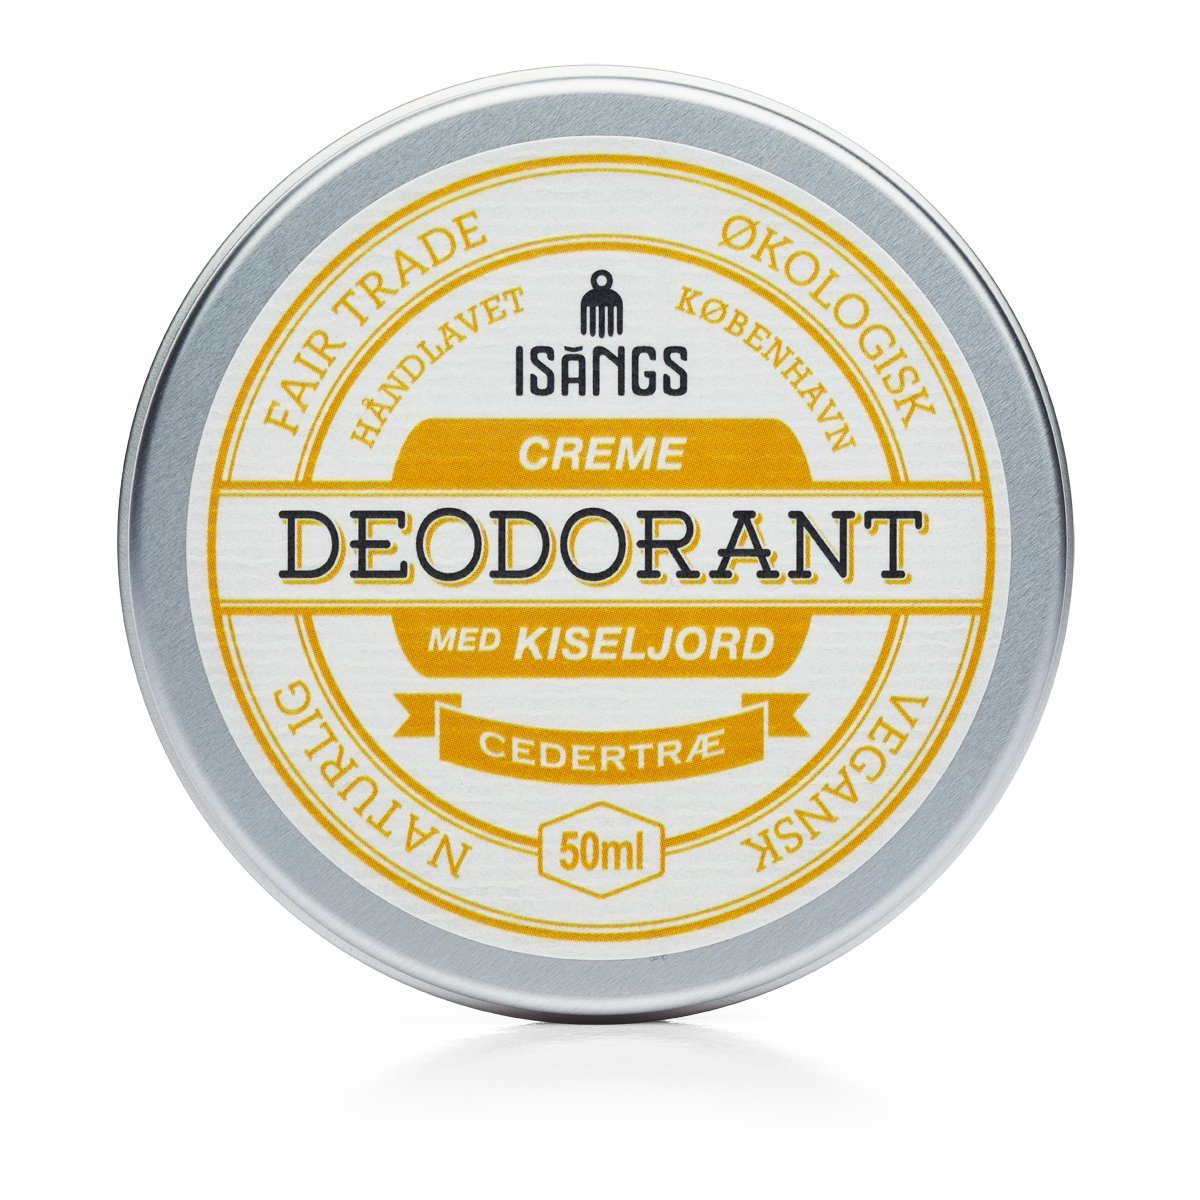 Isangs Creme Deodorant med Kiseljord - Cedertræ Isangs 